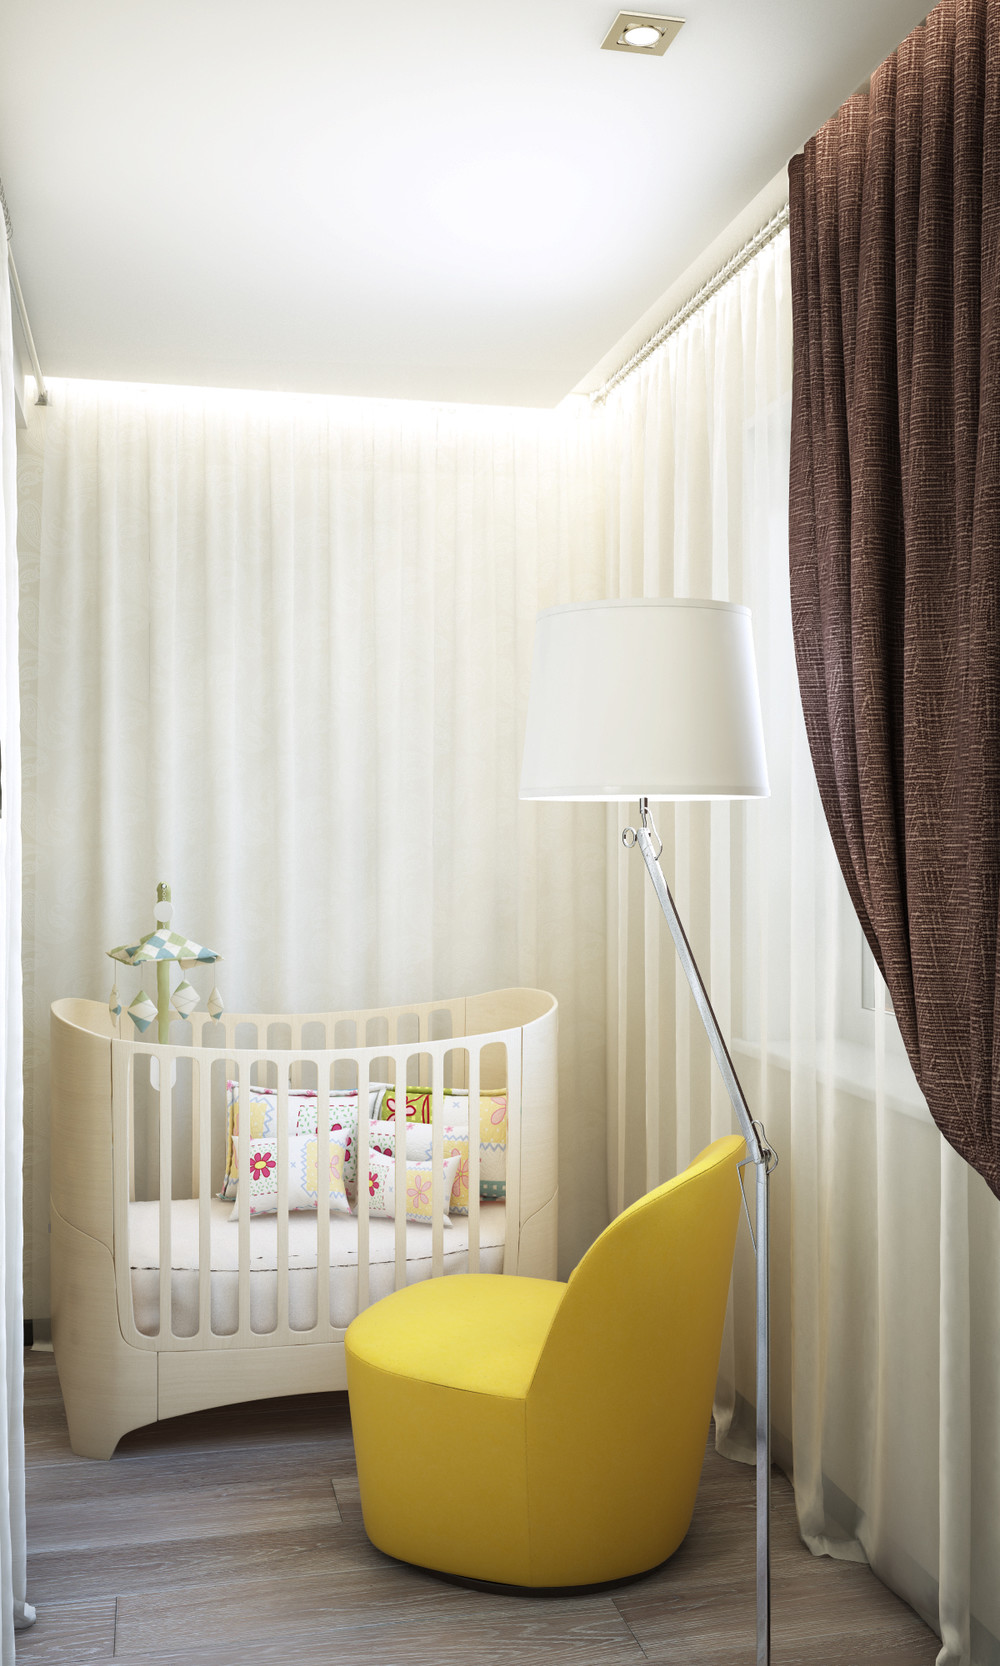 Wedo thiết kế nội thất chung cư nhỏ đơn giản, sáng tạo cho gia đình trẻ